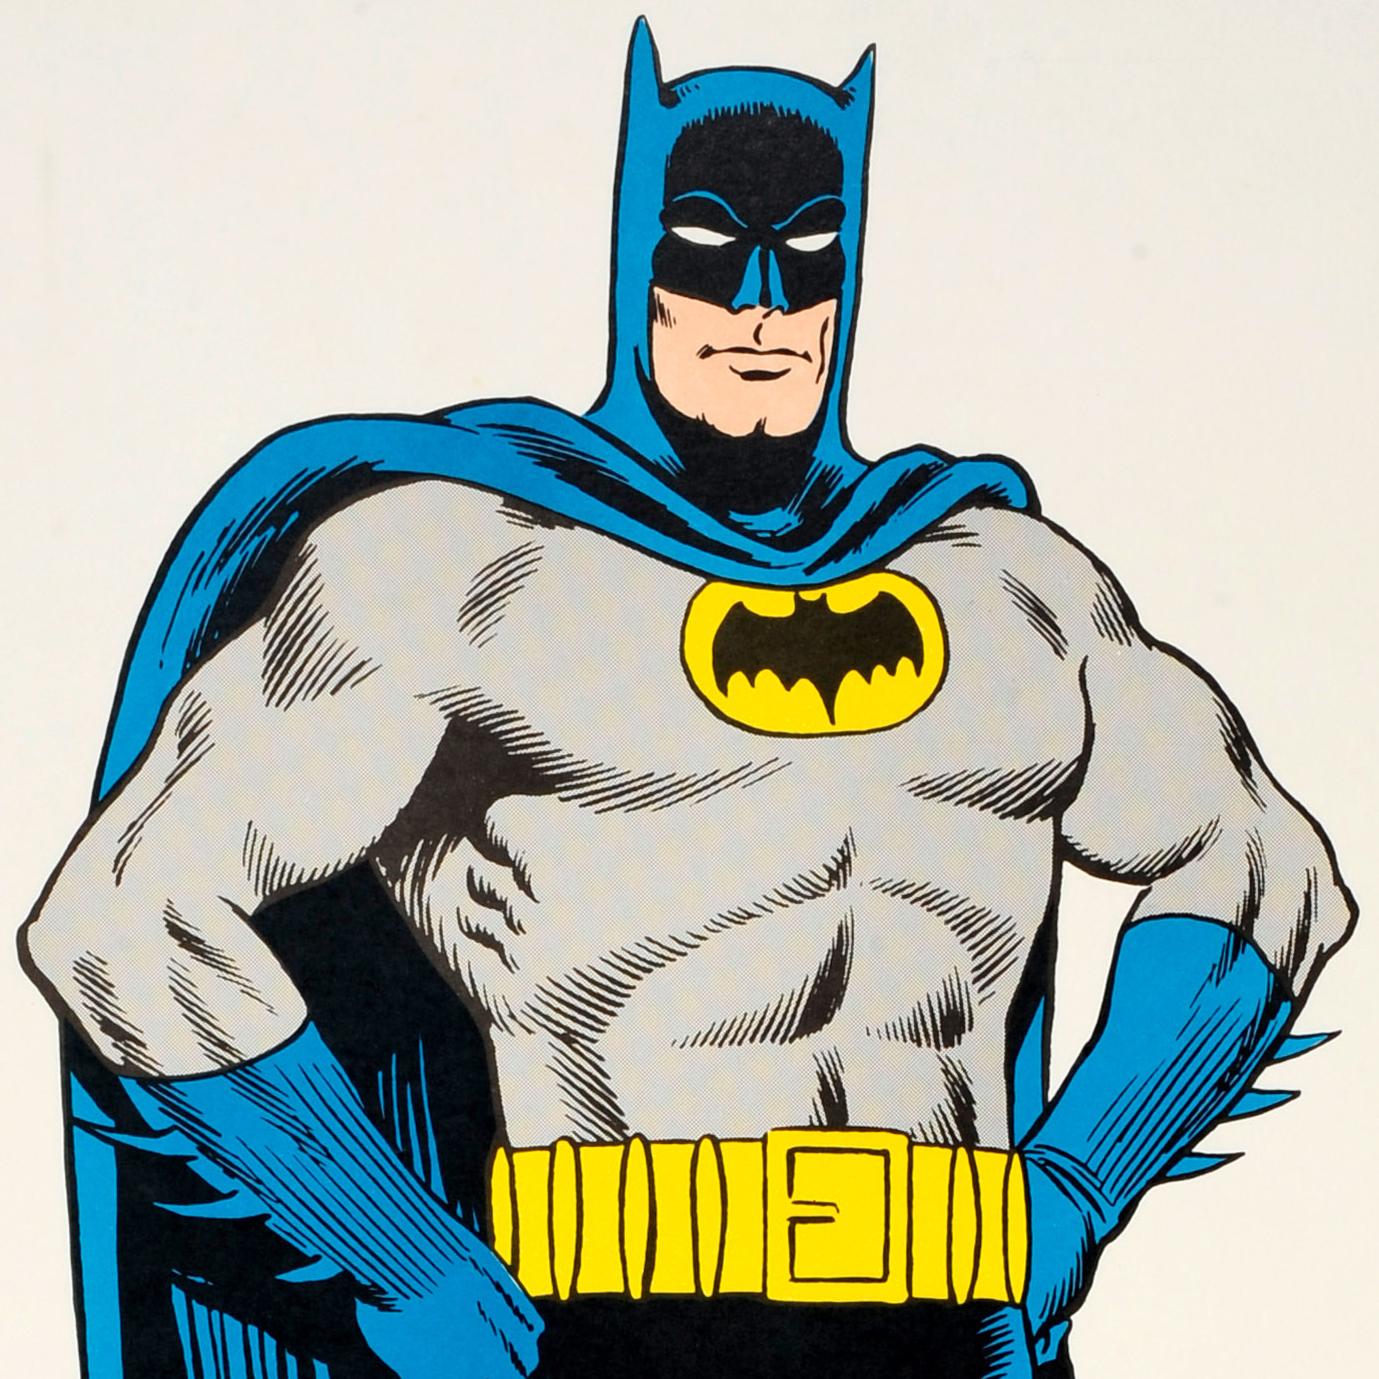 Originales Batman-Poster für The Caped Crusader mit einer farbenfrohen Illustration des Comic-Superhelden in seinem grau-blauen Kostüm, seiner Maske und seinem Umhang mit dem Fledermaus-Logo auf gelbem Hintergrund auf seiner Brust. Kunstwerke des